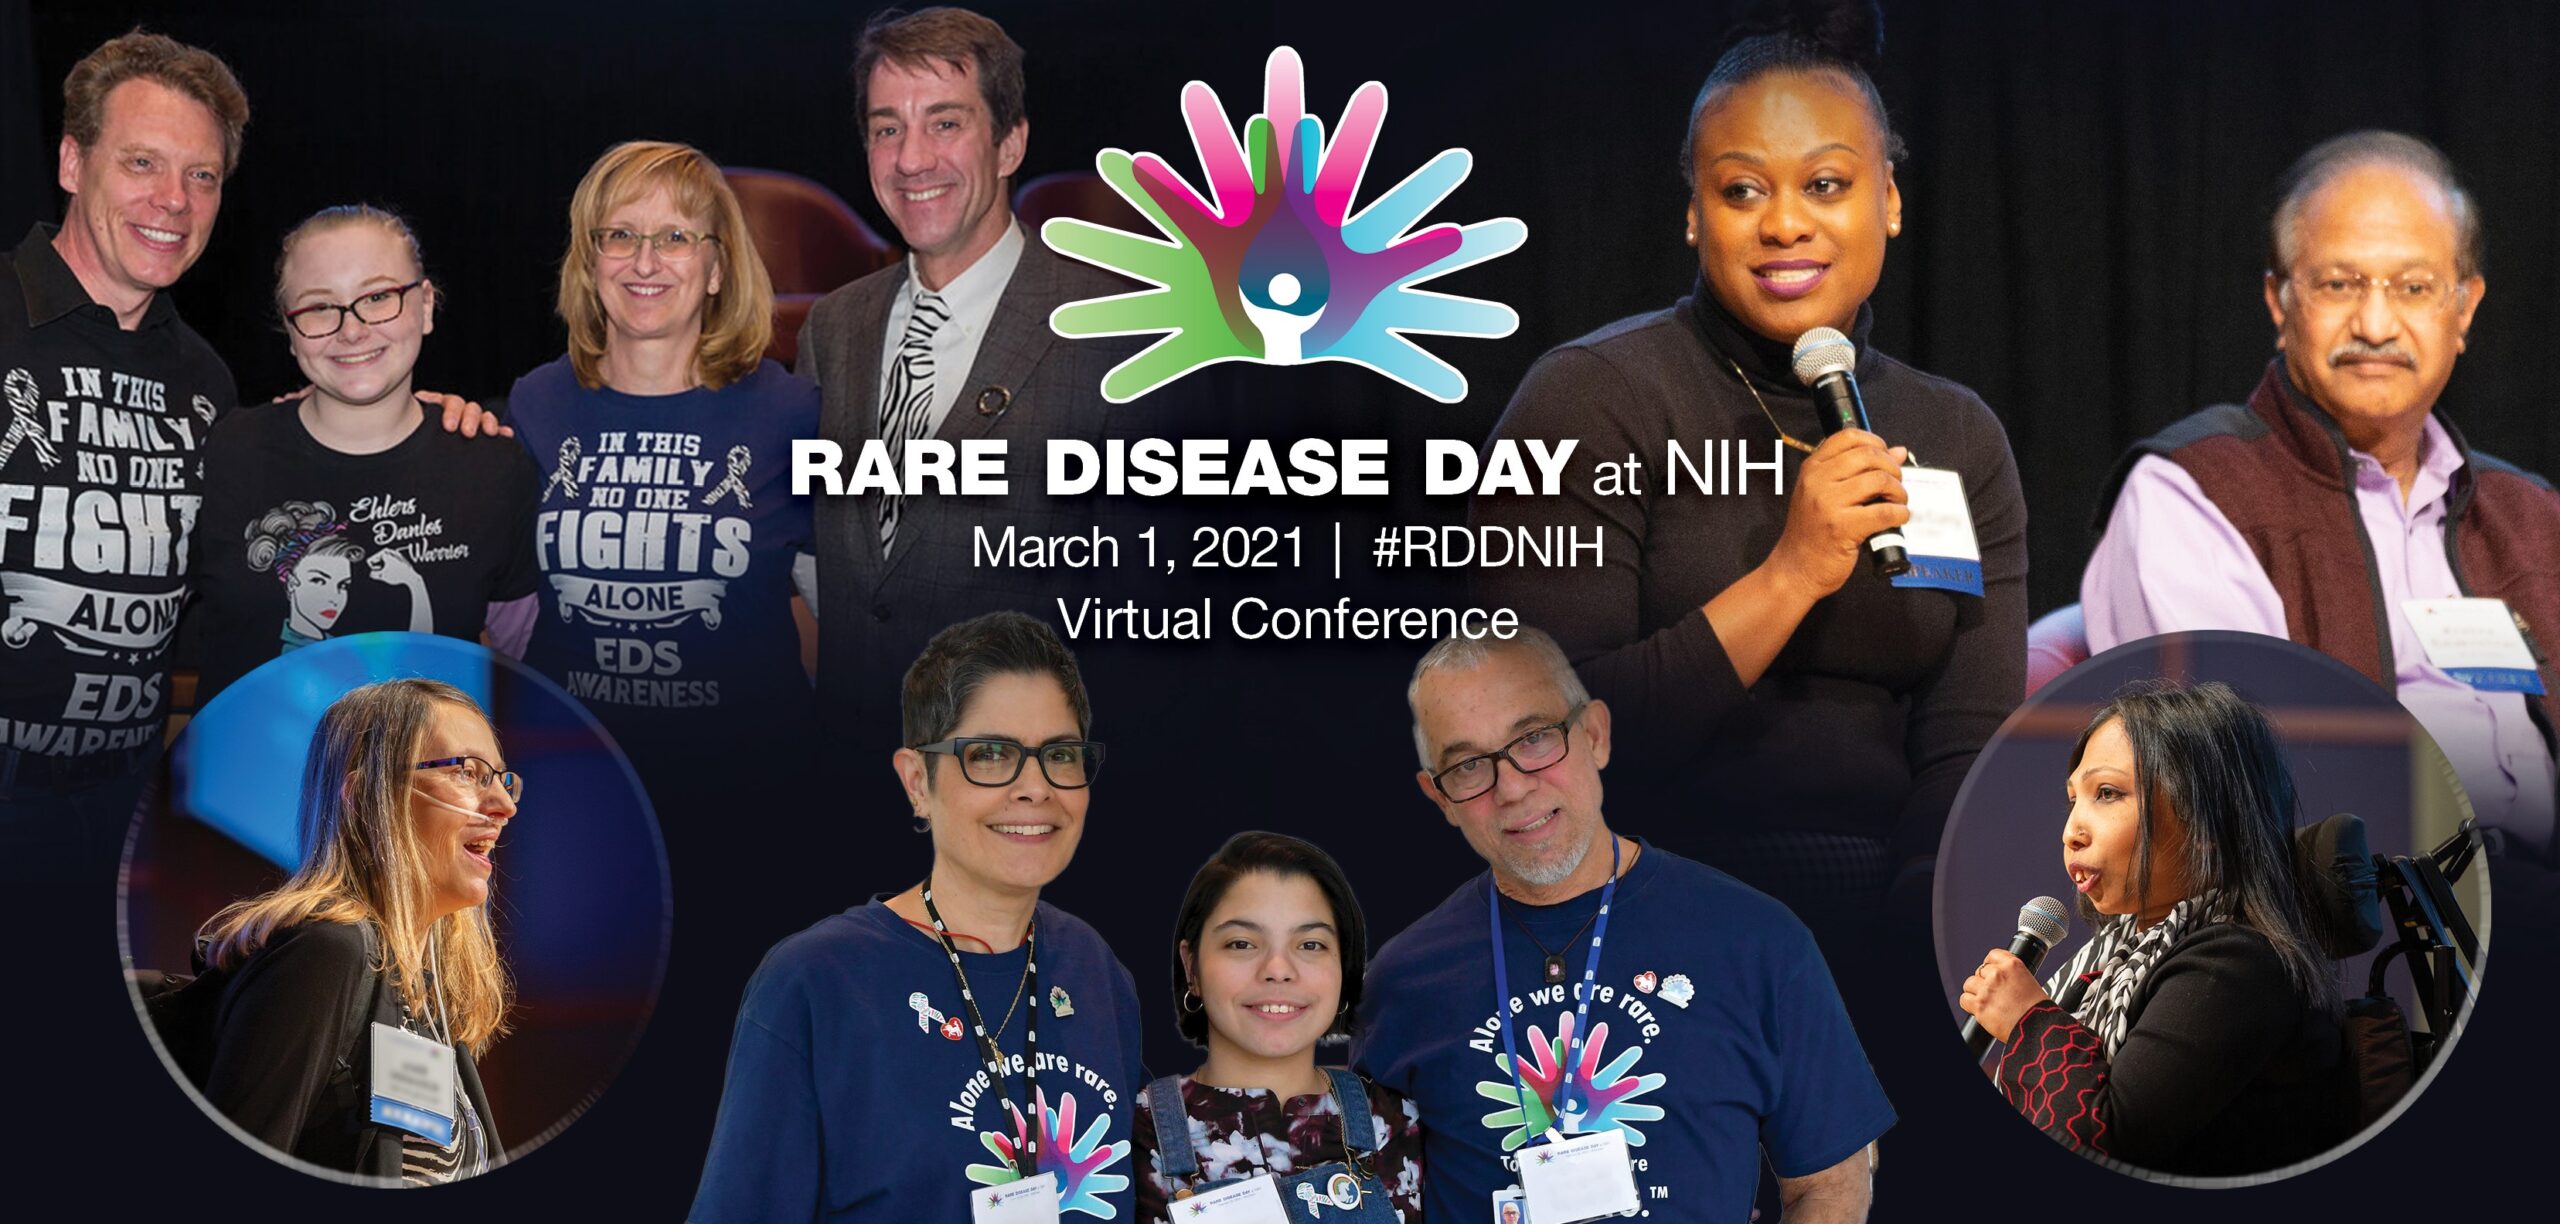 Rare Disease Day at NIH